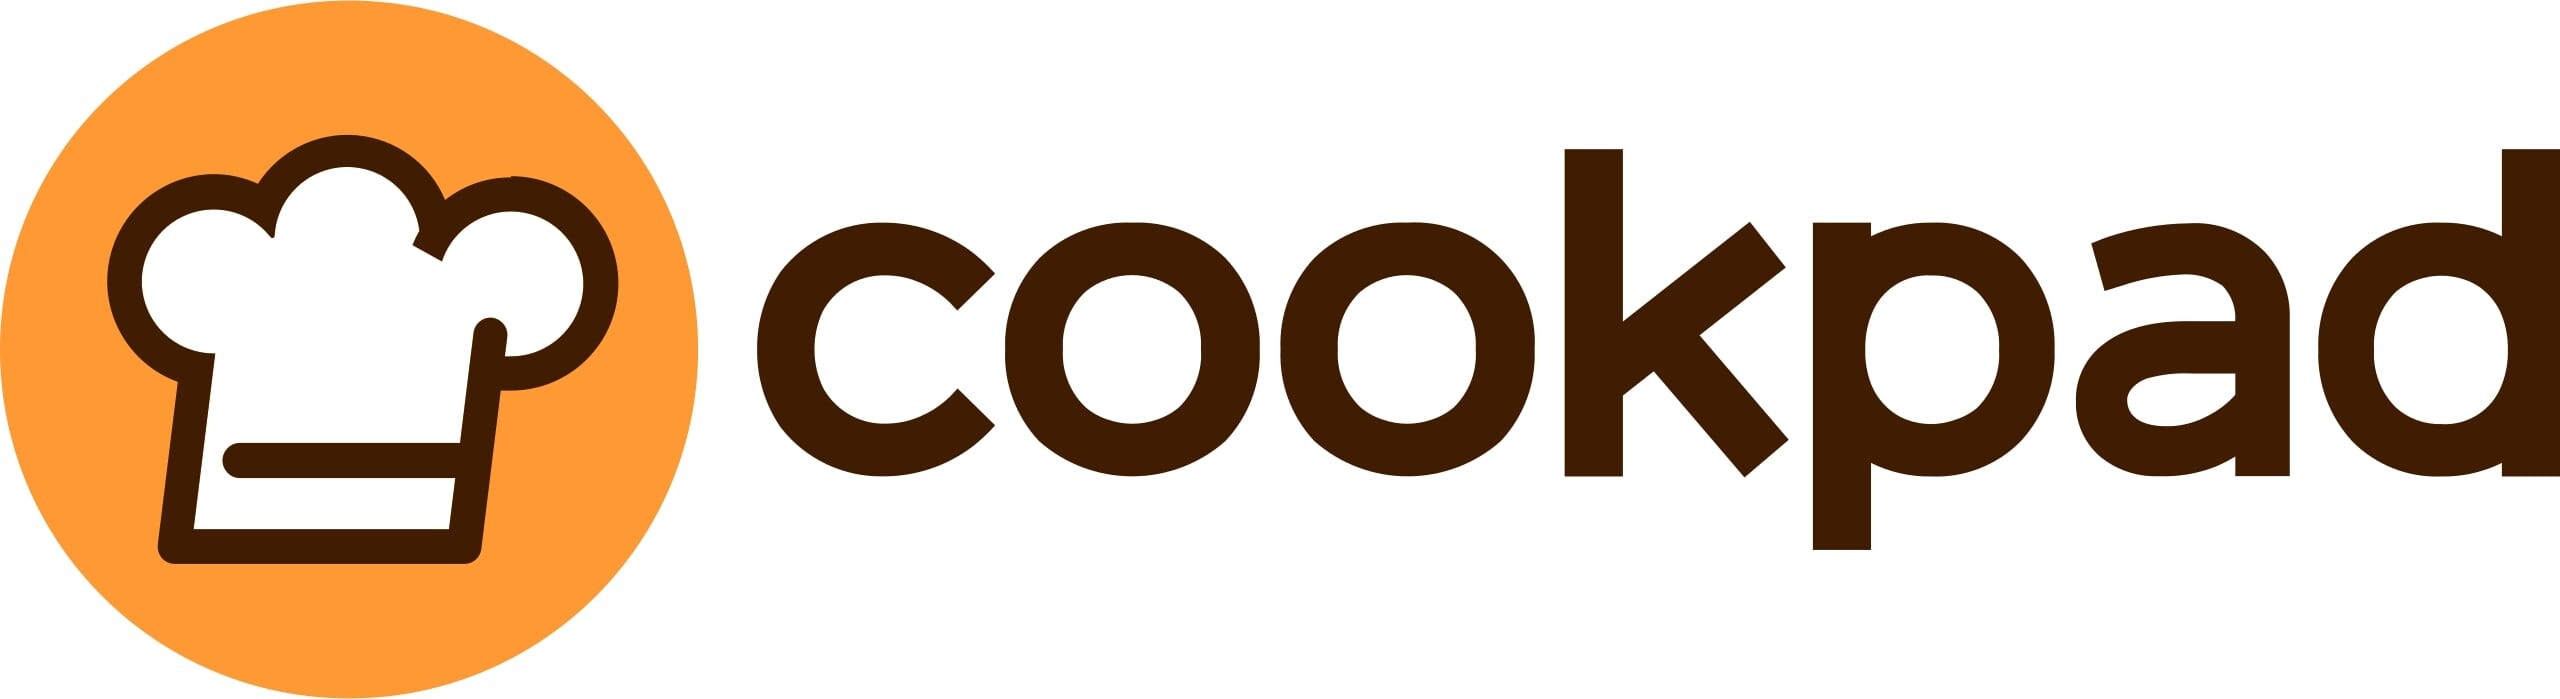 Cookpad (คุ๊กแพด) แพลตฟอร์มแบ่งปันสูตรอาหารระดับโลก เปิดสถิติความเสมอภาคในการทำอาหารของผู้ชายไทยและผู้หญิงไทย จากรายงาน Cookpad-Gallup ทั่วโลก